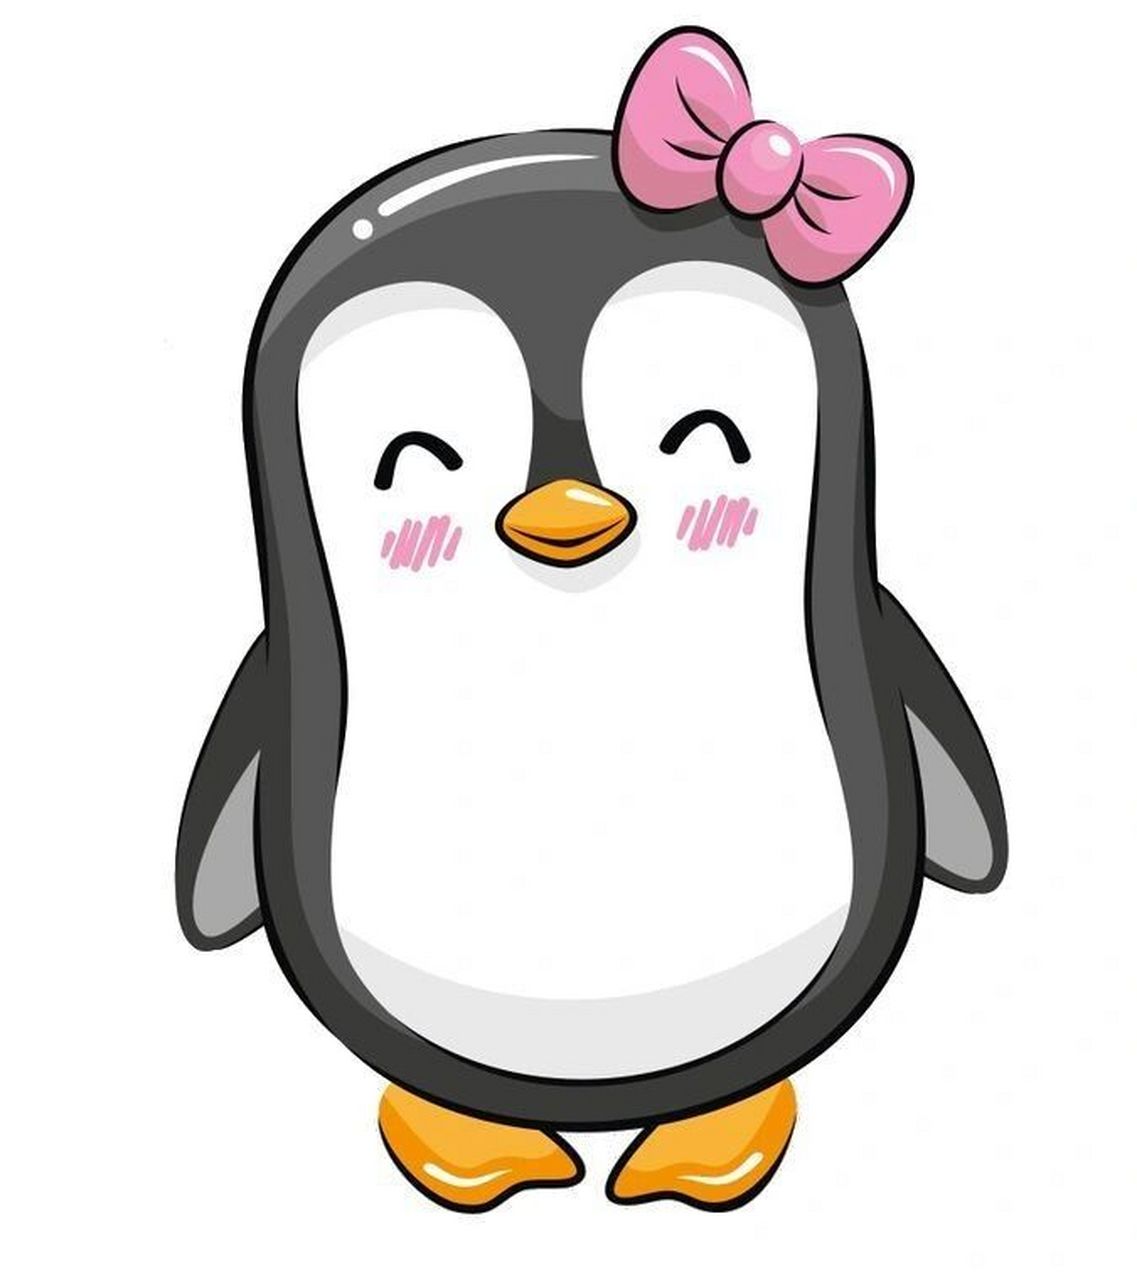 96你们要的q版企鹅绘画素材来了～96 分享一篇可爱的q版企鹅素材